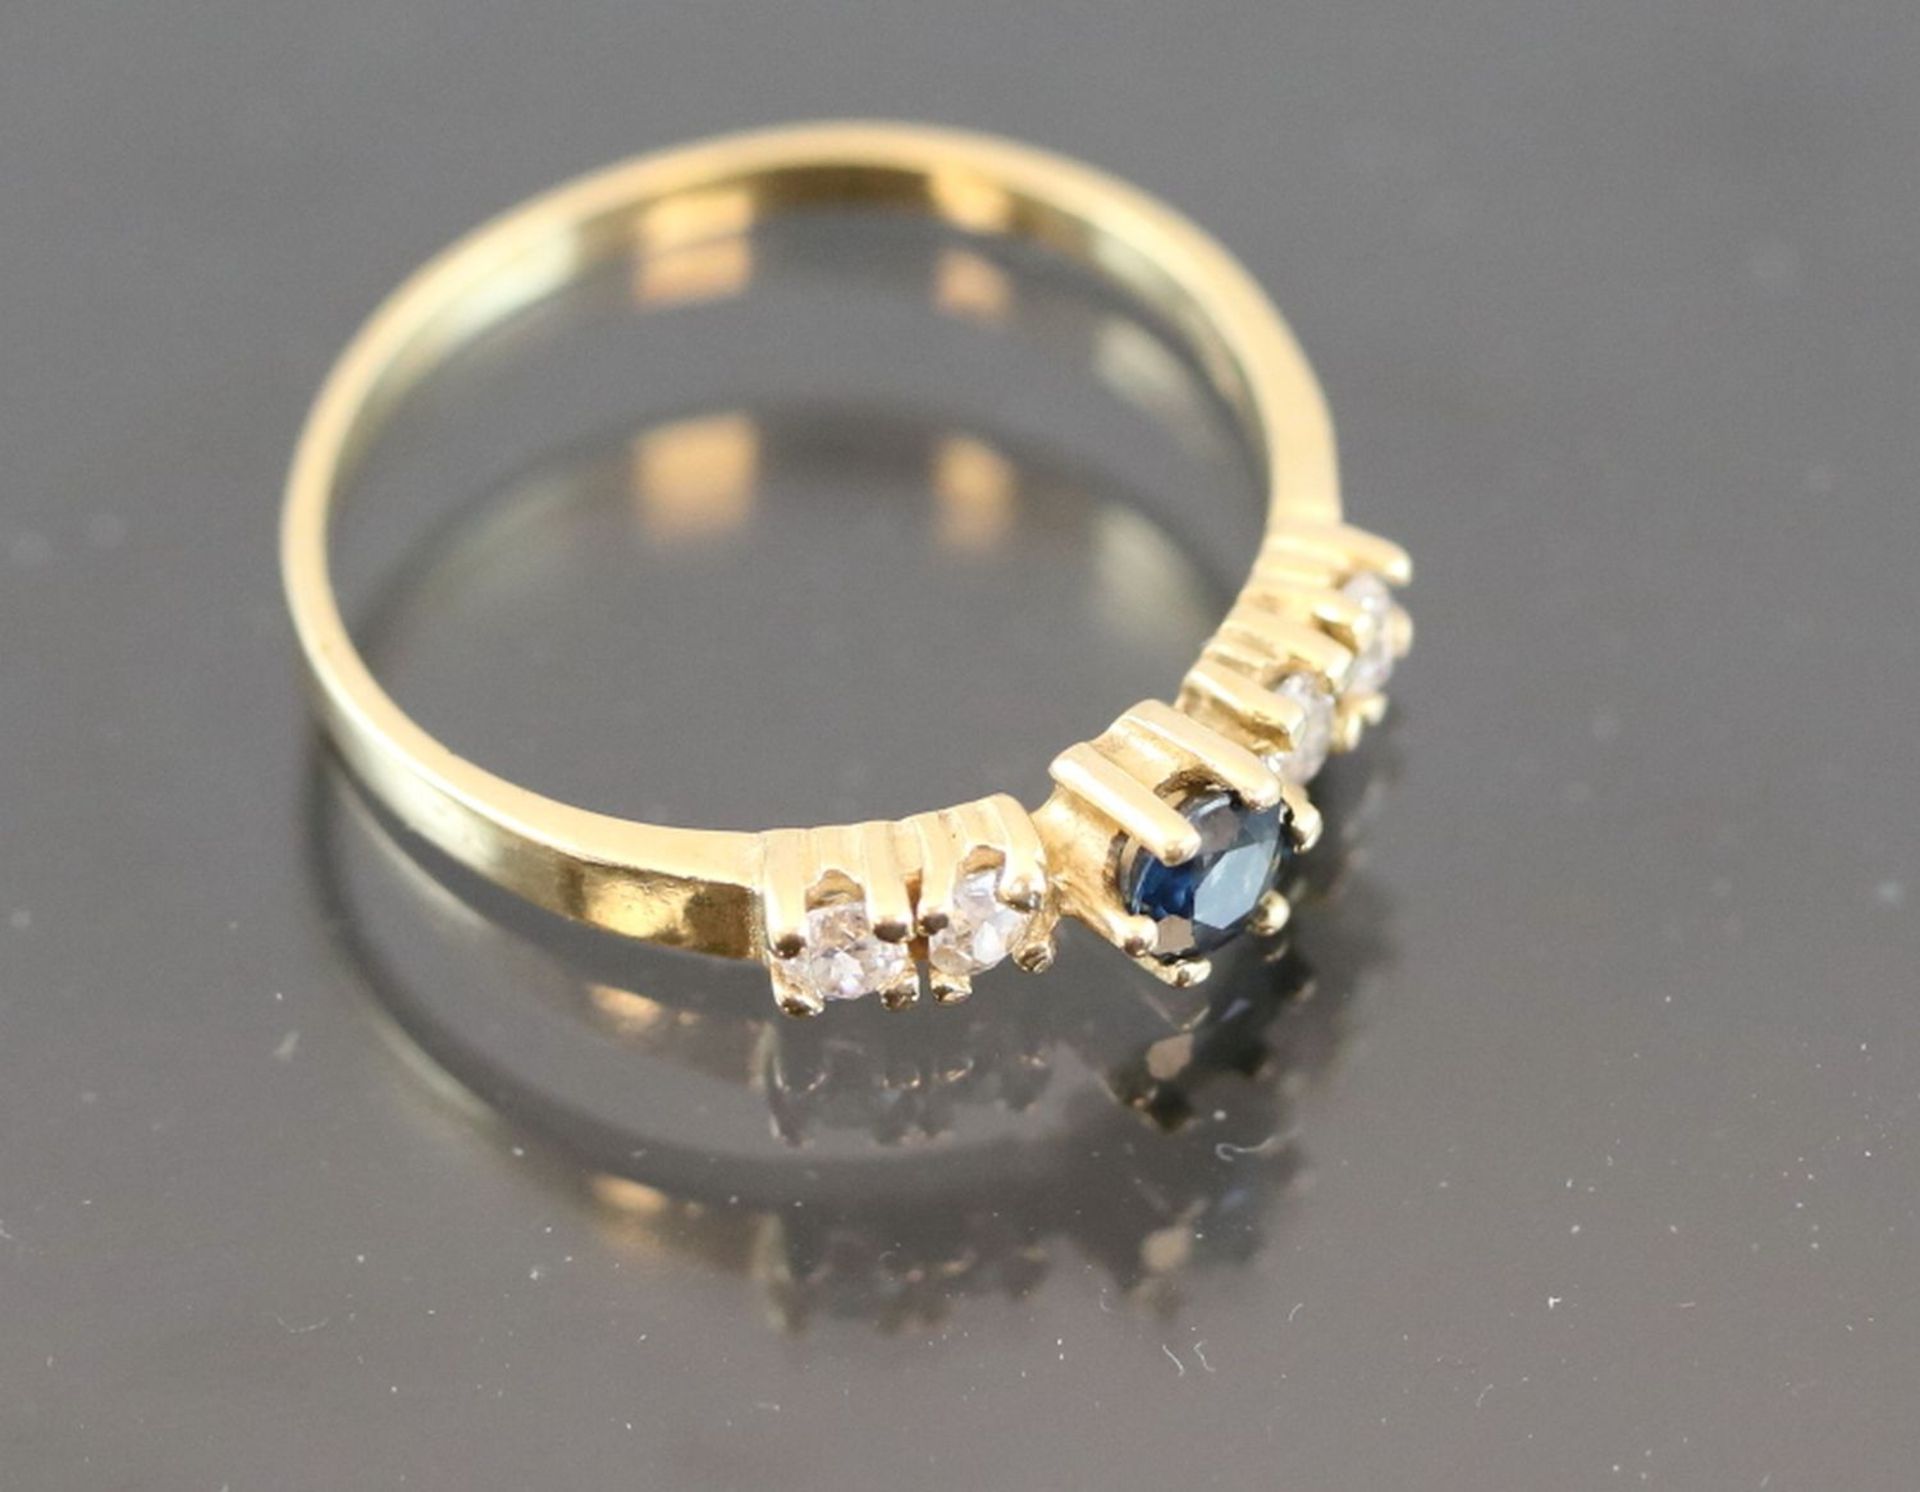 Saphir-Ring, 750 Gelbgold1,8 Gramm 1 Saphir, 0,08 ct., blau. Ringgröße: 54Schätzpreis: 350,- - Bild 2 aus 4